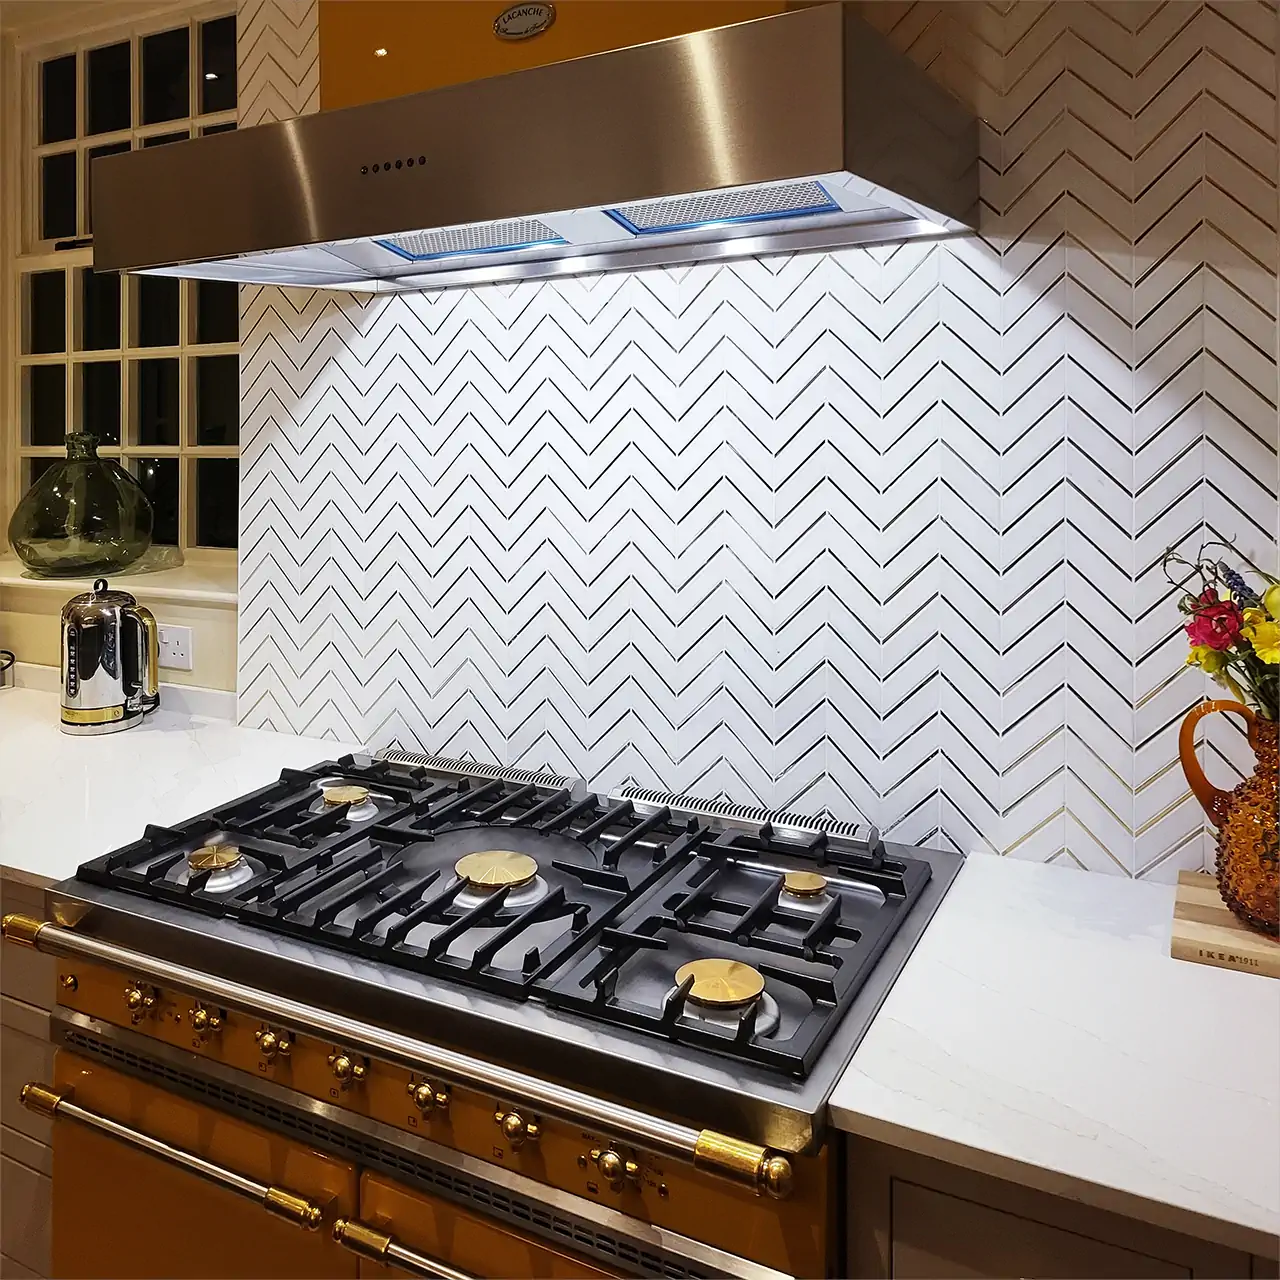 E-MosaicTile White and Golden Chevron Marble Wall Tile Luxury Decorative Backsplash 3